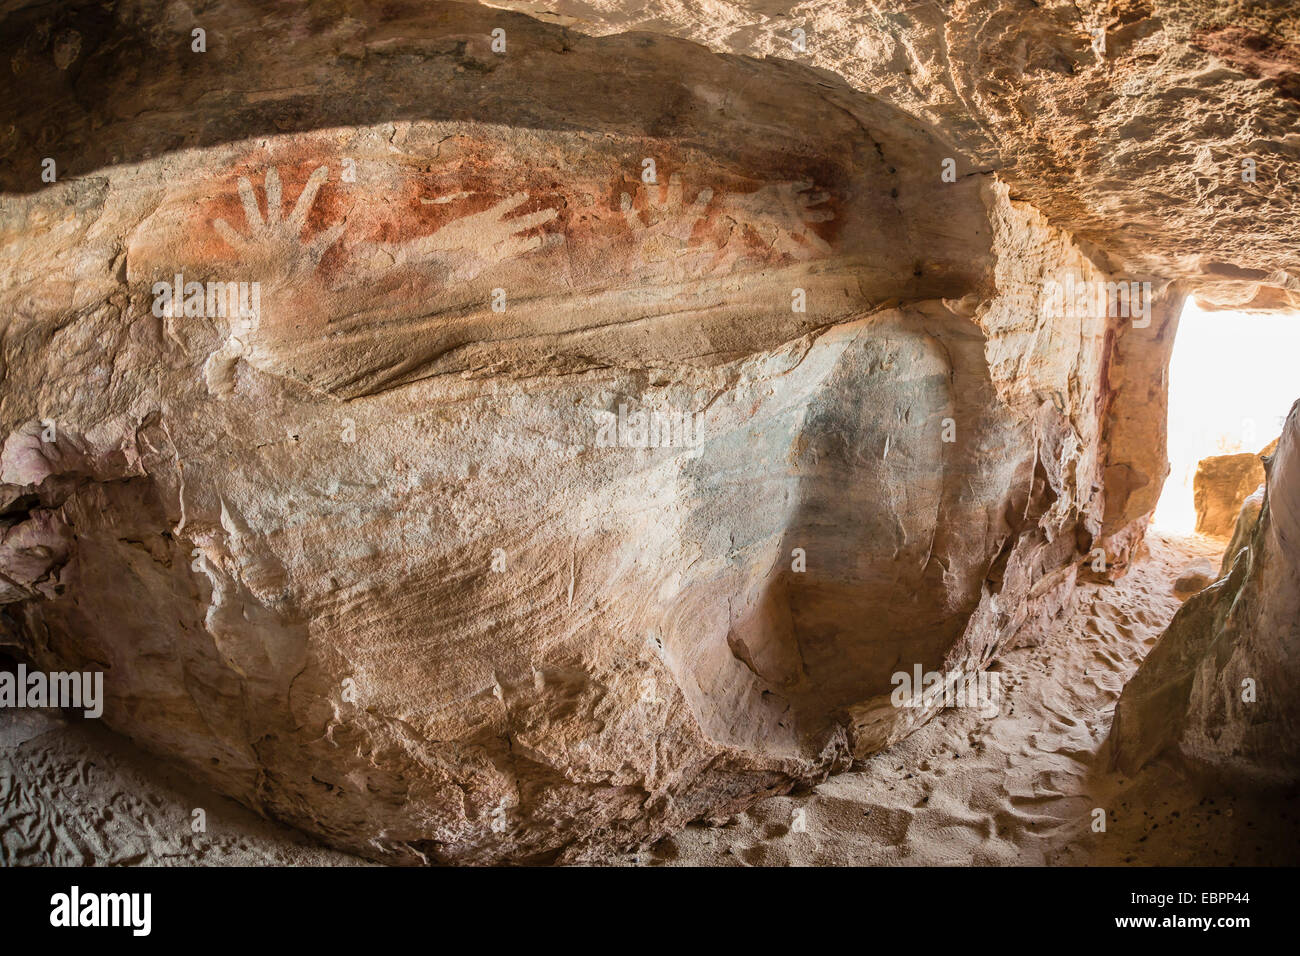 Los aborígenes cueva Wandjina ilustraciones en cuevas de piedra arenisca en la isla de Bigge, Kimberley, en Australia Occidental, Australia, el Pacífico Foto de stock